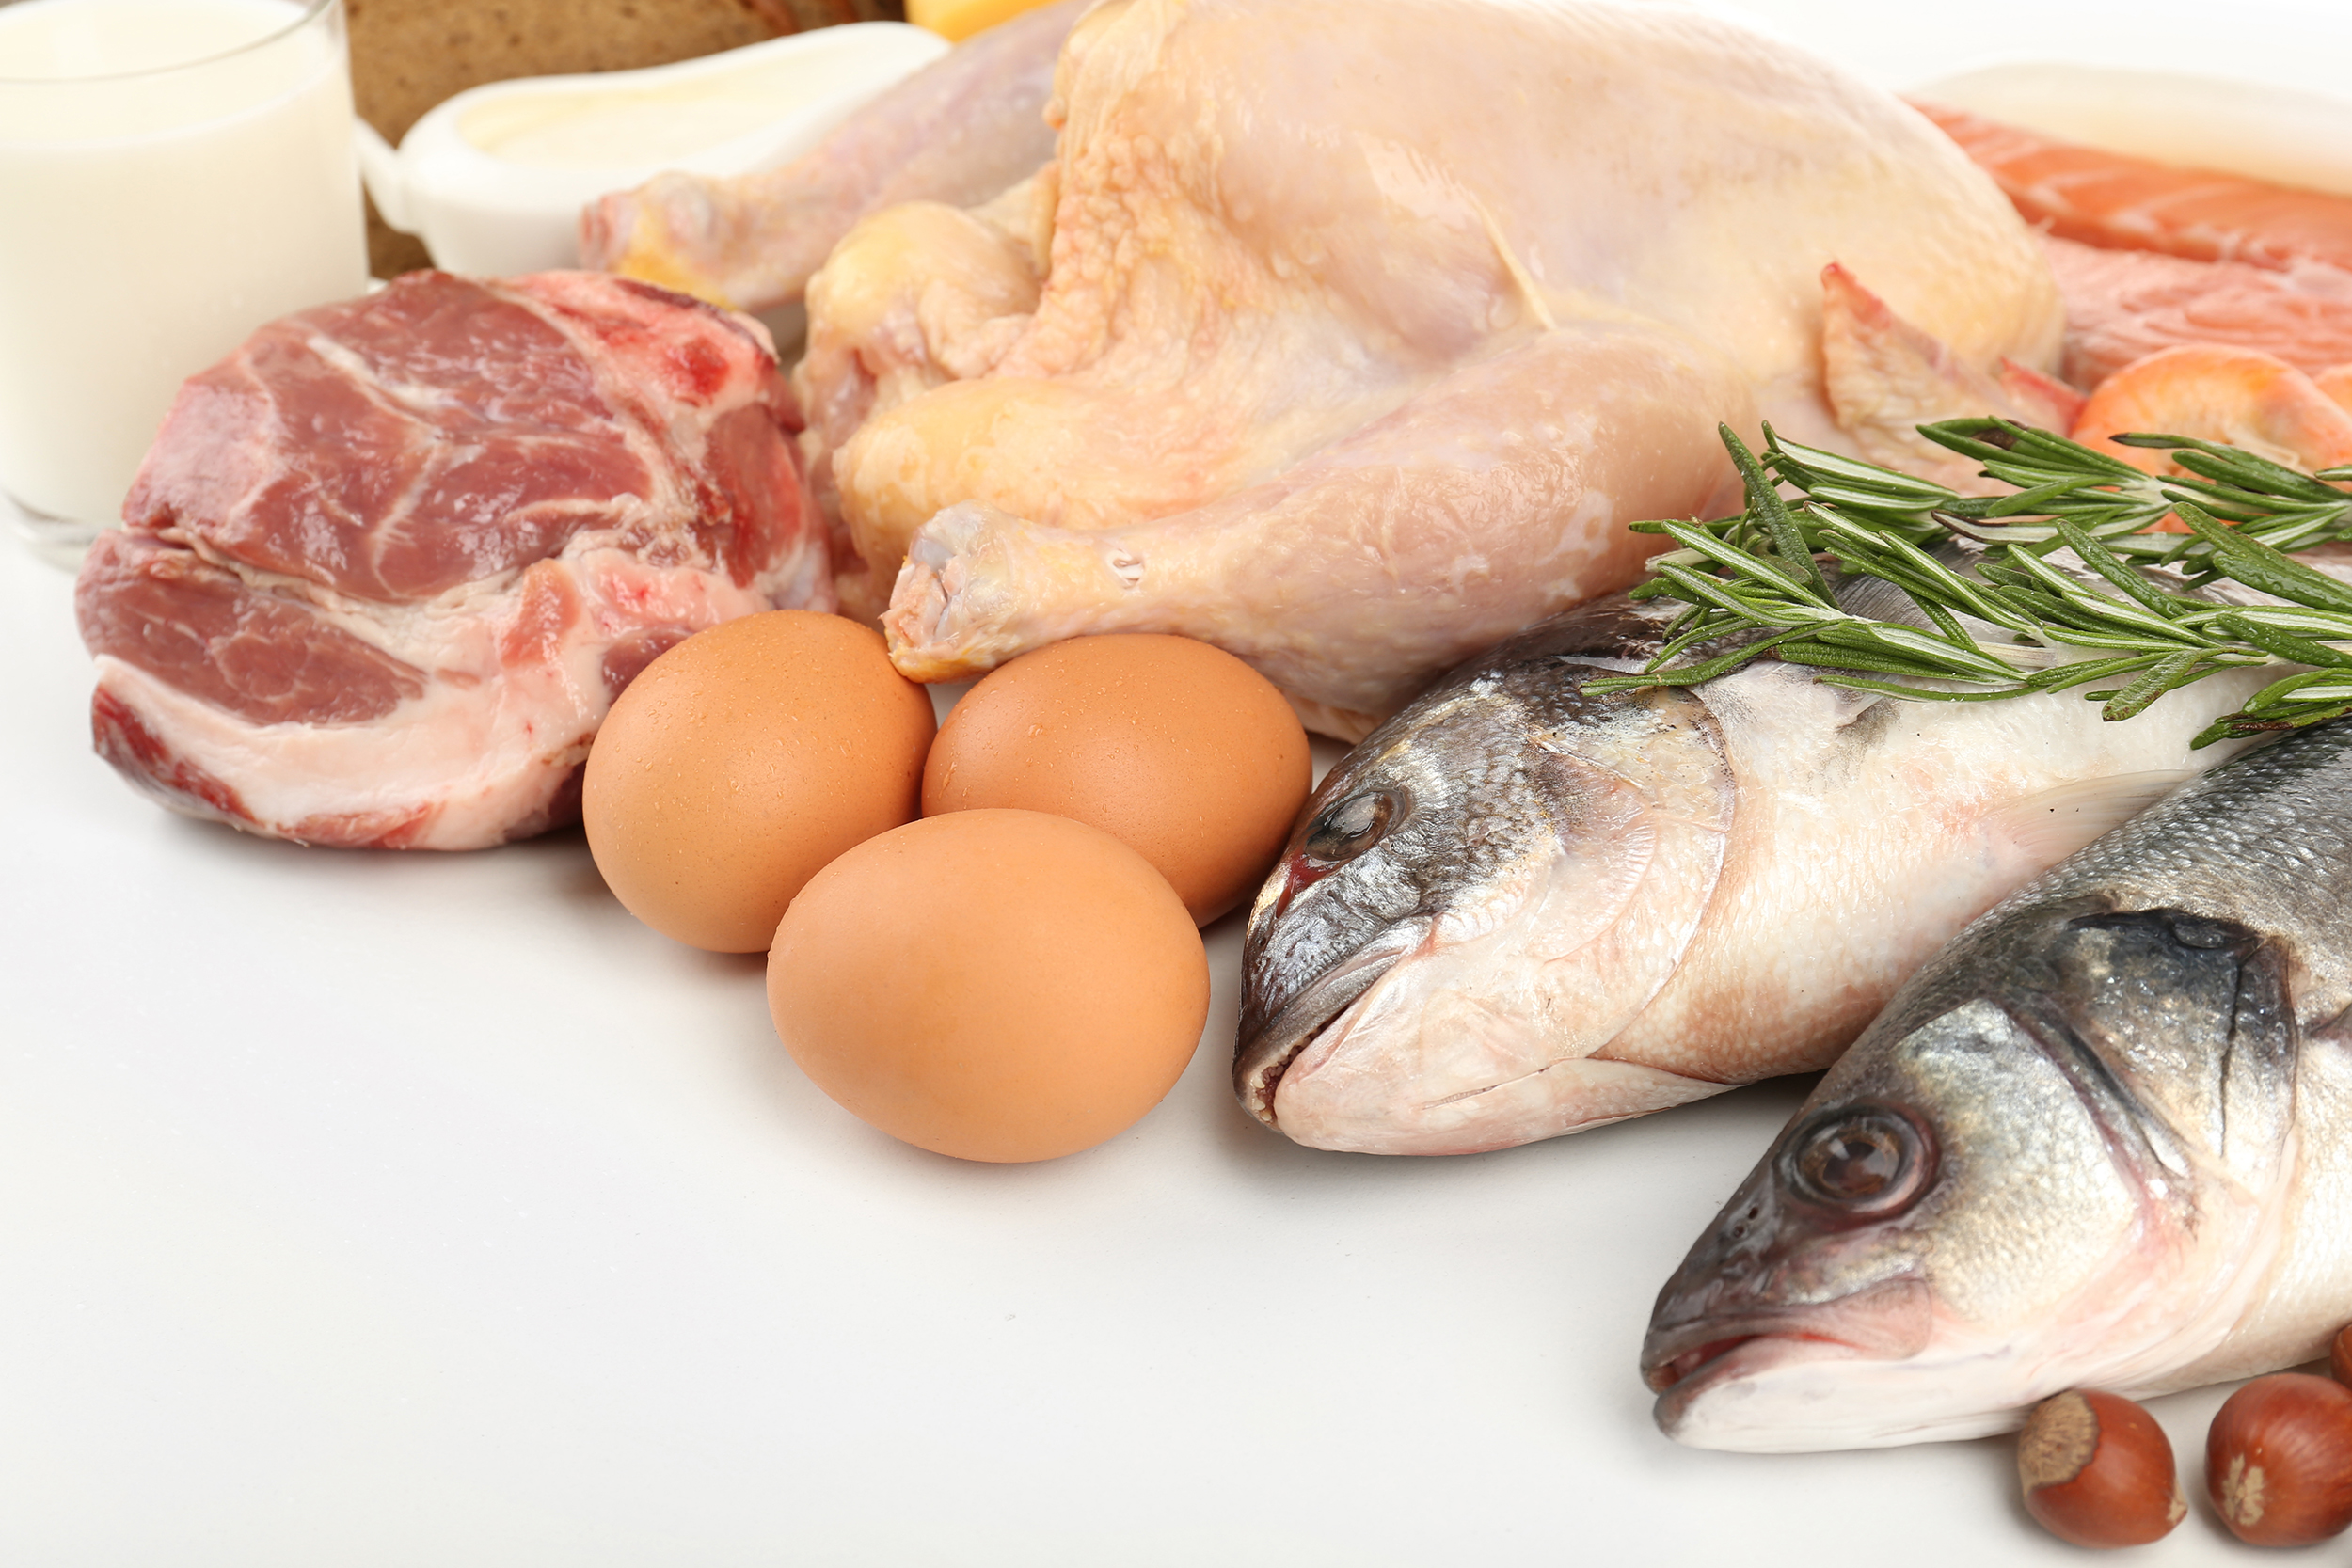 їжте курятину або рибу, яка є більш здоровою